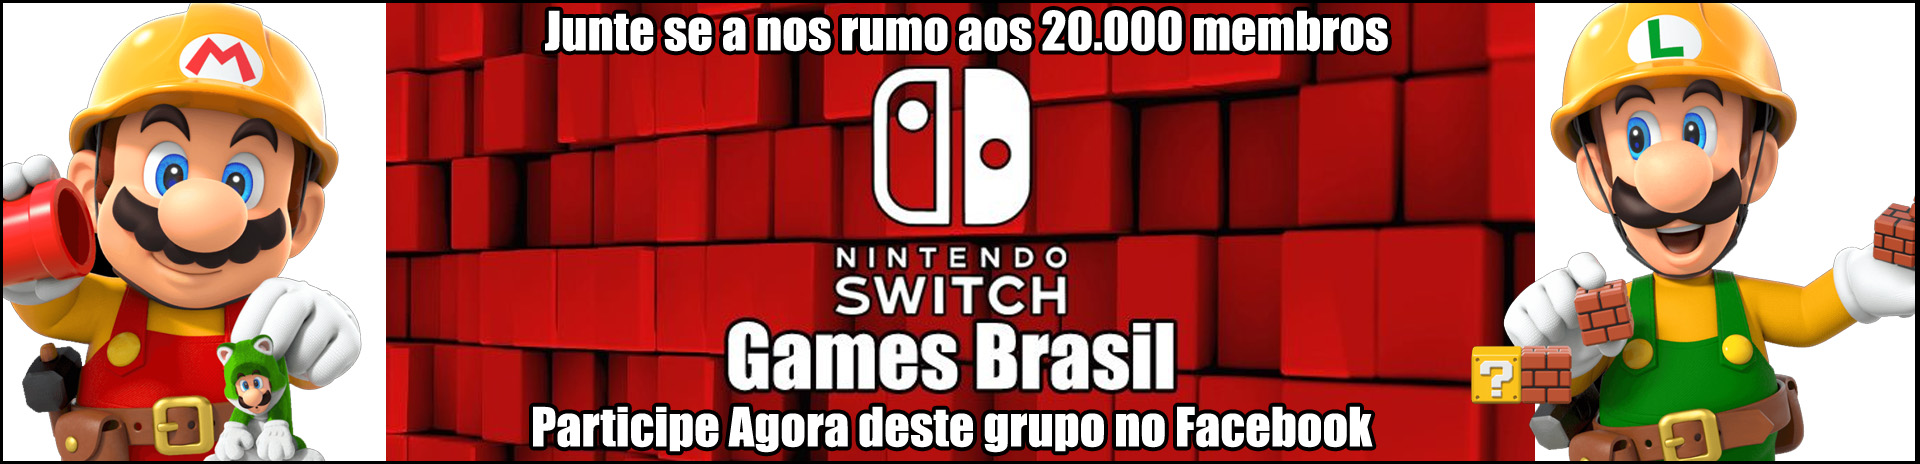 Maior Comunidade no facebook - Nintendo Switch Games Brasil - Rumo aos 20 mil membros